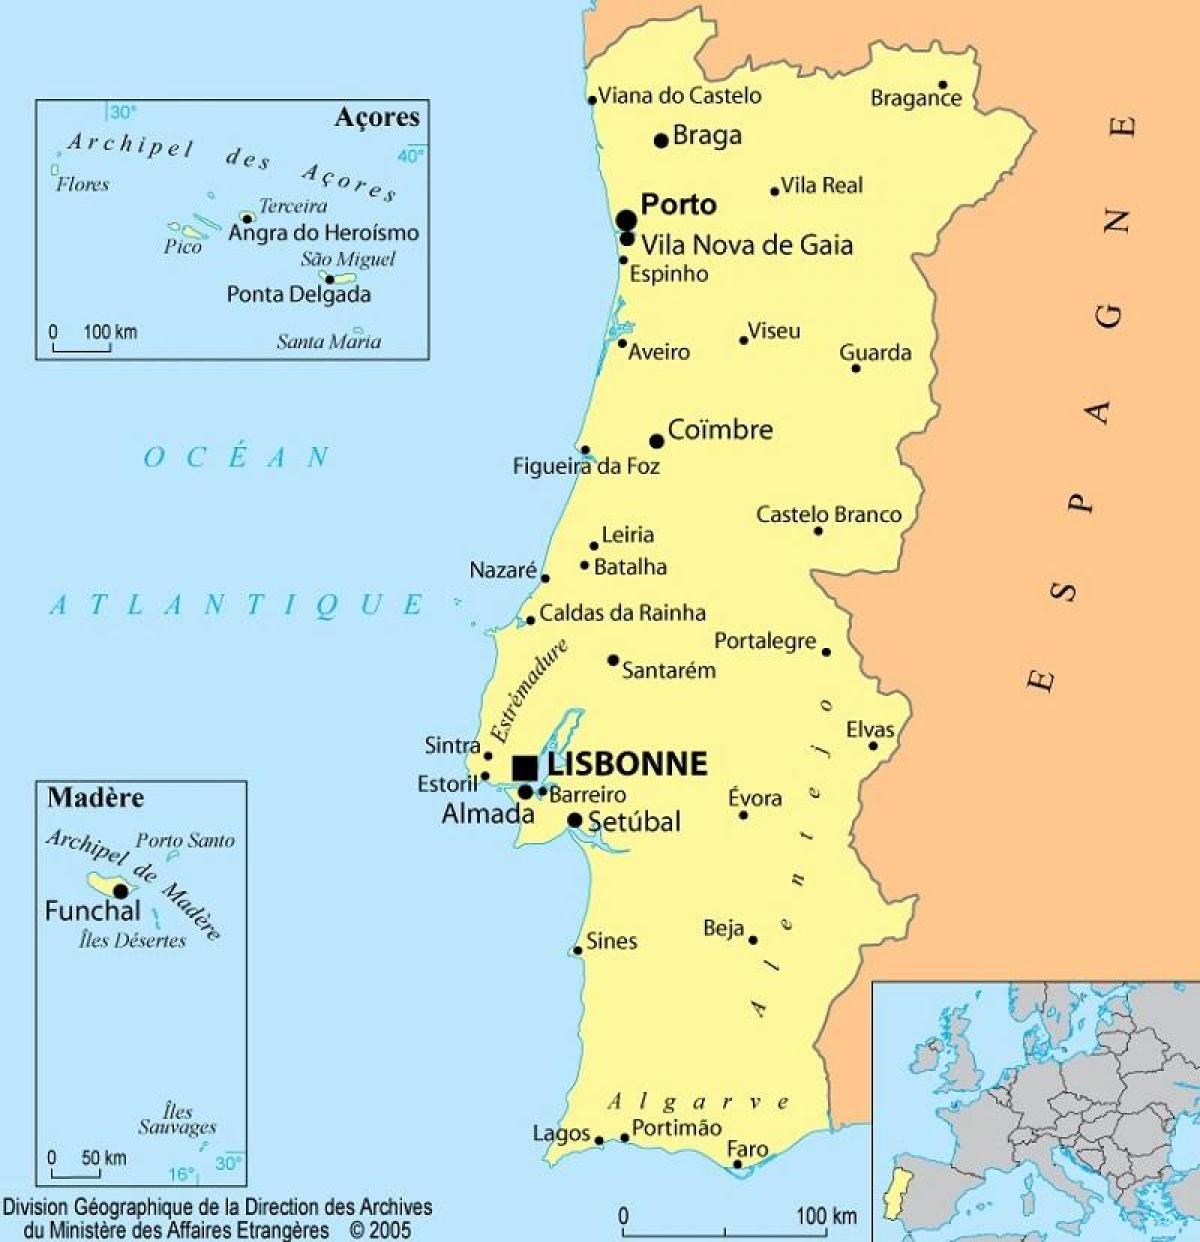 Karte von Portugal und Madeira